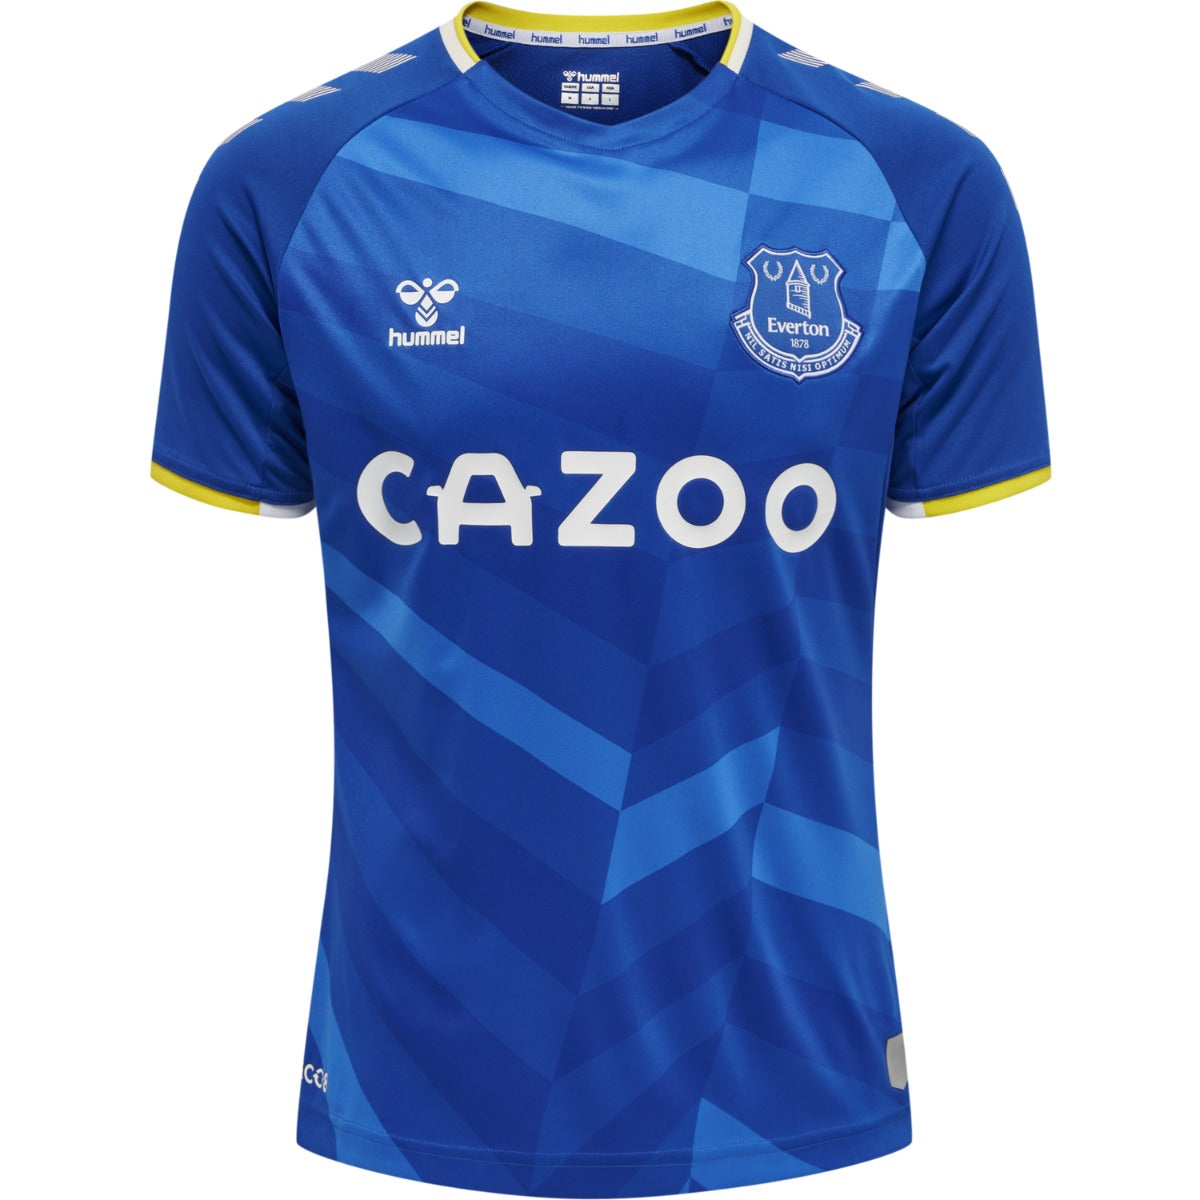 Hummel 2021-22 Everton Home Jersey - Blue (Top)